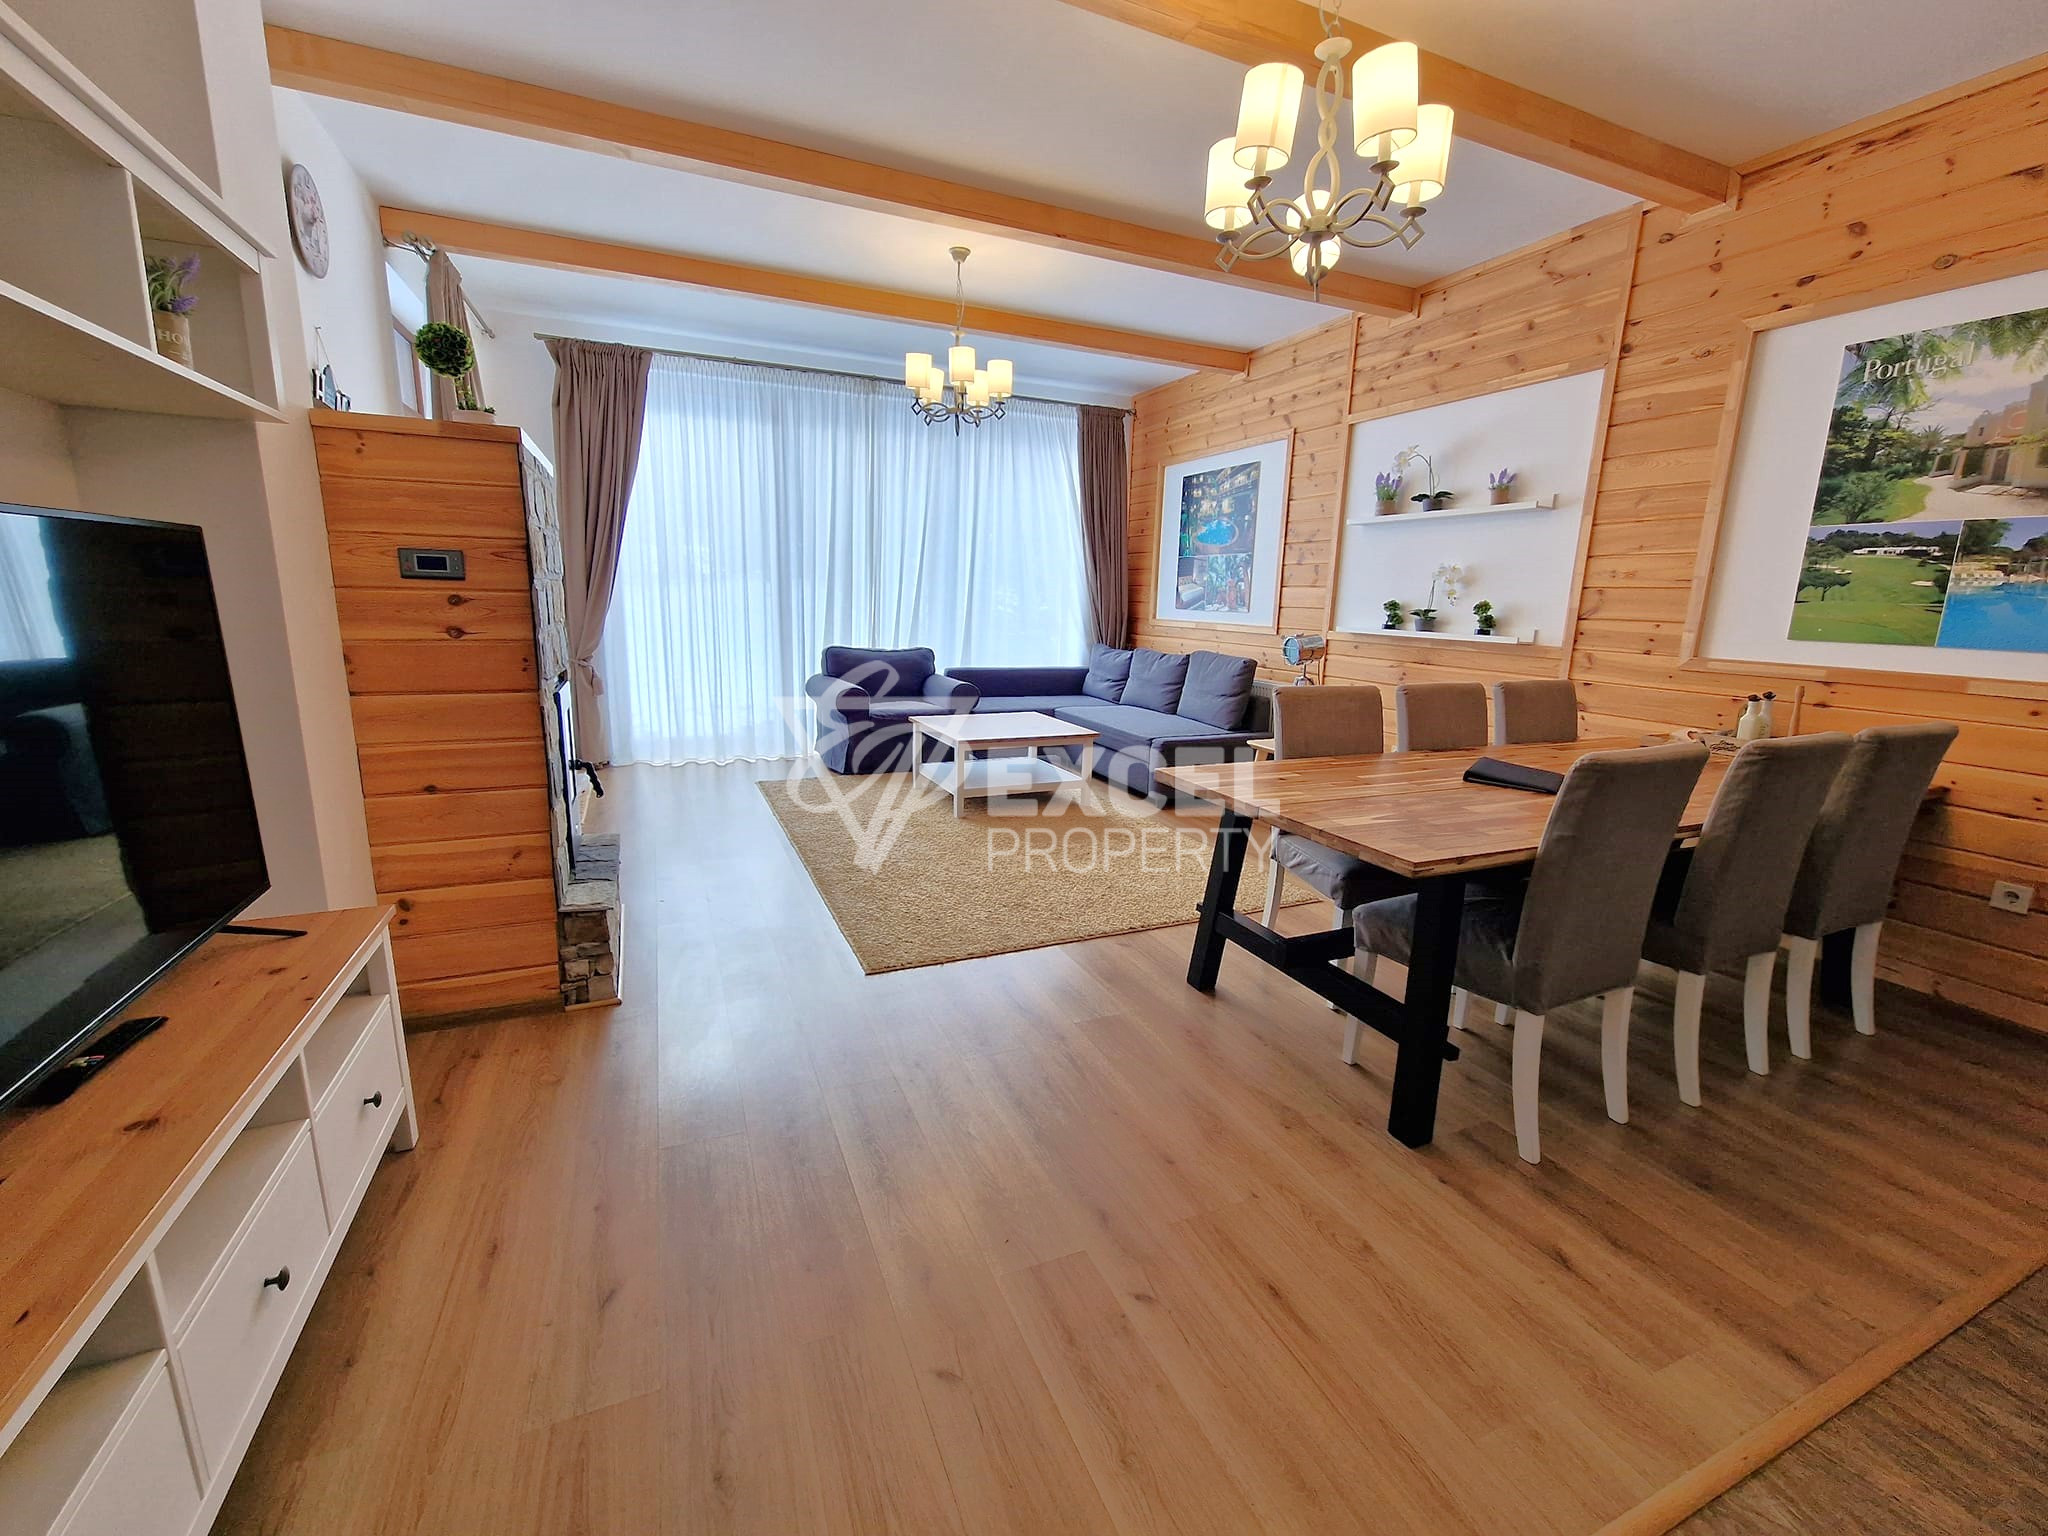 Алпийска къща с три спални за продажба в район Разлог и Банско! Без такса поддръжка!